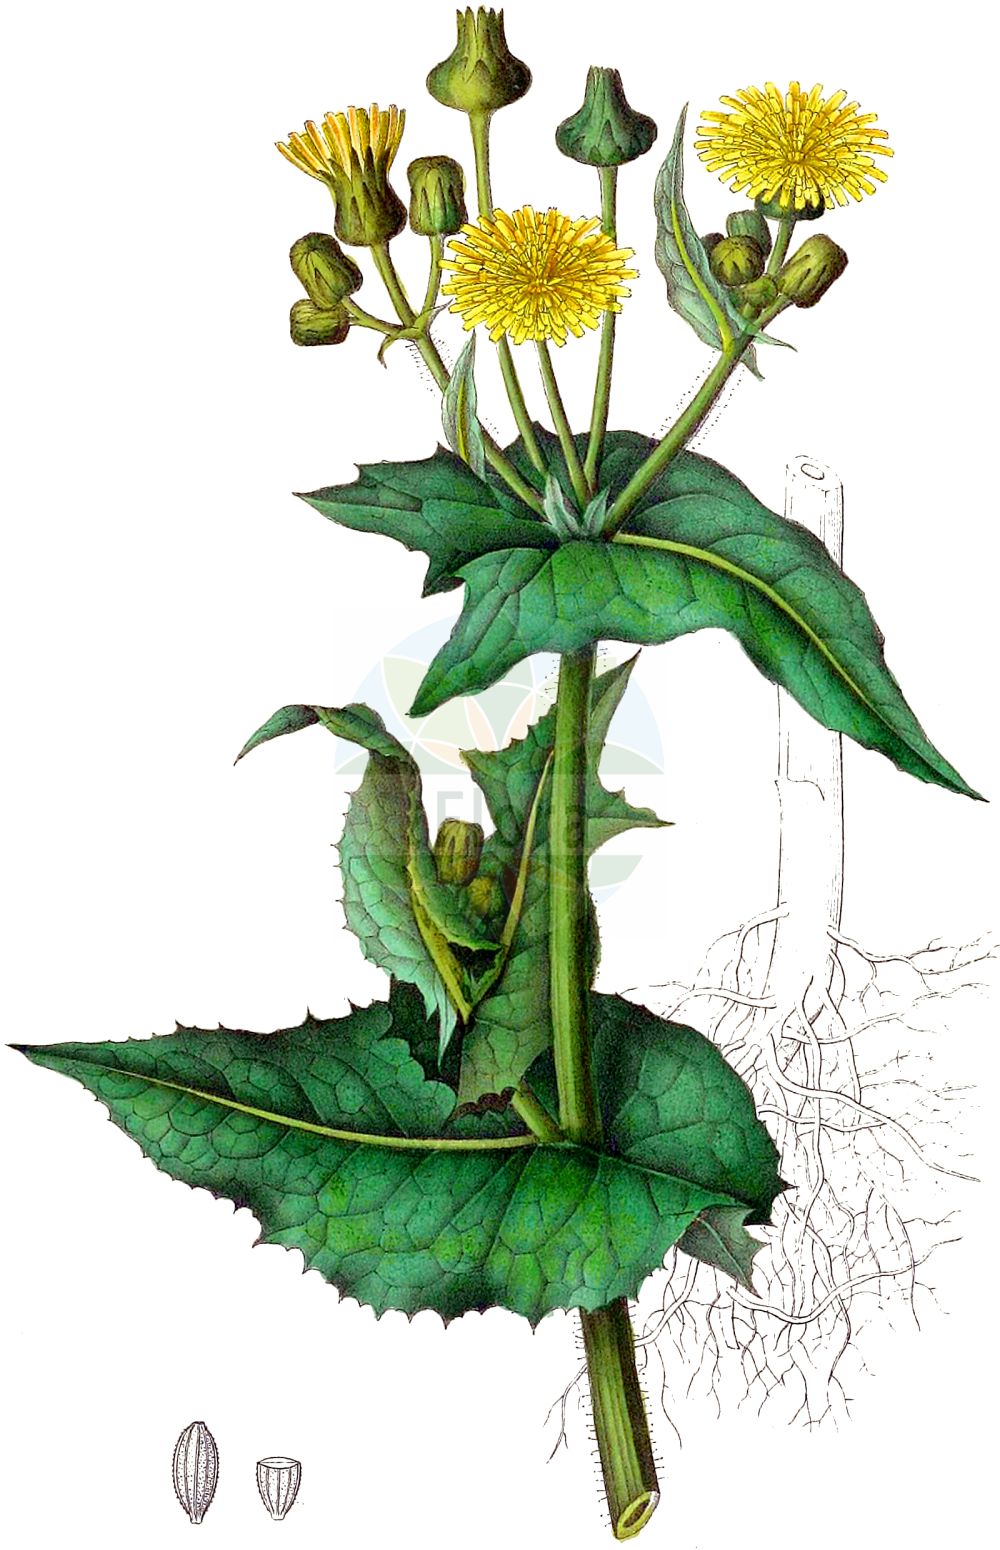 Historische Abbildung von Sonchus asper (Rauhe Gänsedistel - Prickly Sow-thistle). Das Bild zeigt Blatt, Bluete, Frucht und Same. ---- Historical Drawing of Sonchus asper (Rauhe Gänsedistel - Prickly Sow-thistle). The image is showing leaf, flower, fruit and seed.(Sonchus asper,Rauhe Gänsedistel,Prickly Sow-thistle,Sonchus asper,Sonchus decipiens,Sonchus runcinatus,Sonchus spinosus,Rauhe Gaensedistel,Raue Gaensedistel,Prickly Sow-thistle,Sharp-fringed Sow Thistle,Spiny Sow Thistle,Spiny-leaved Sow Thistle,Rough Sowthistle,Spiny Milkthistle,Sonchus,Gänsedistel,Sowthistle,Asteraceae,Korbblütengewächse,Daisy family,Blatt,Bluete,Frucht,Same,leaf,flower,fruit,seed,Dietrich (1833-1844))